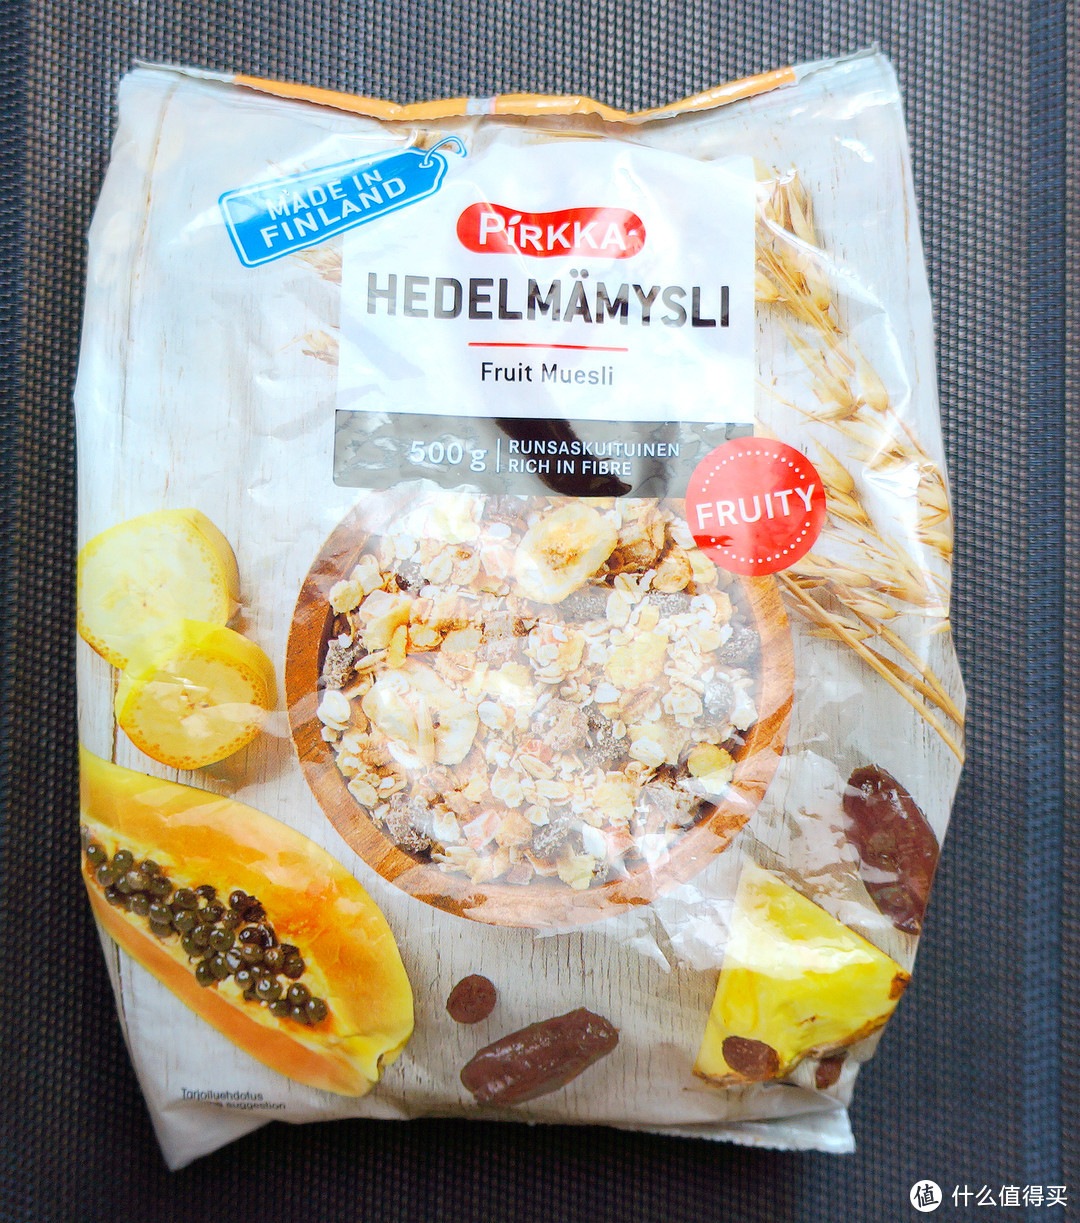 今天早餐吃什么？就吃来自世界上幸福指数最高的国家的Pirkka水果谷物燕麦片吧